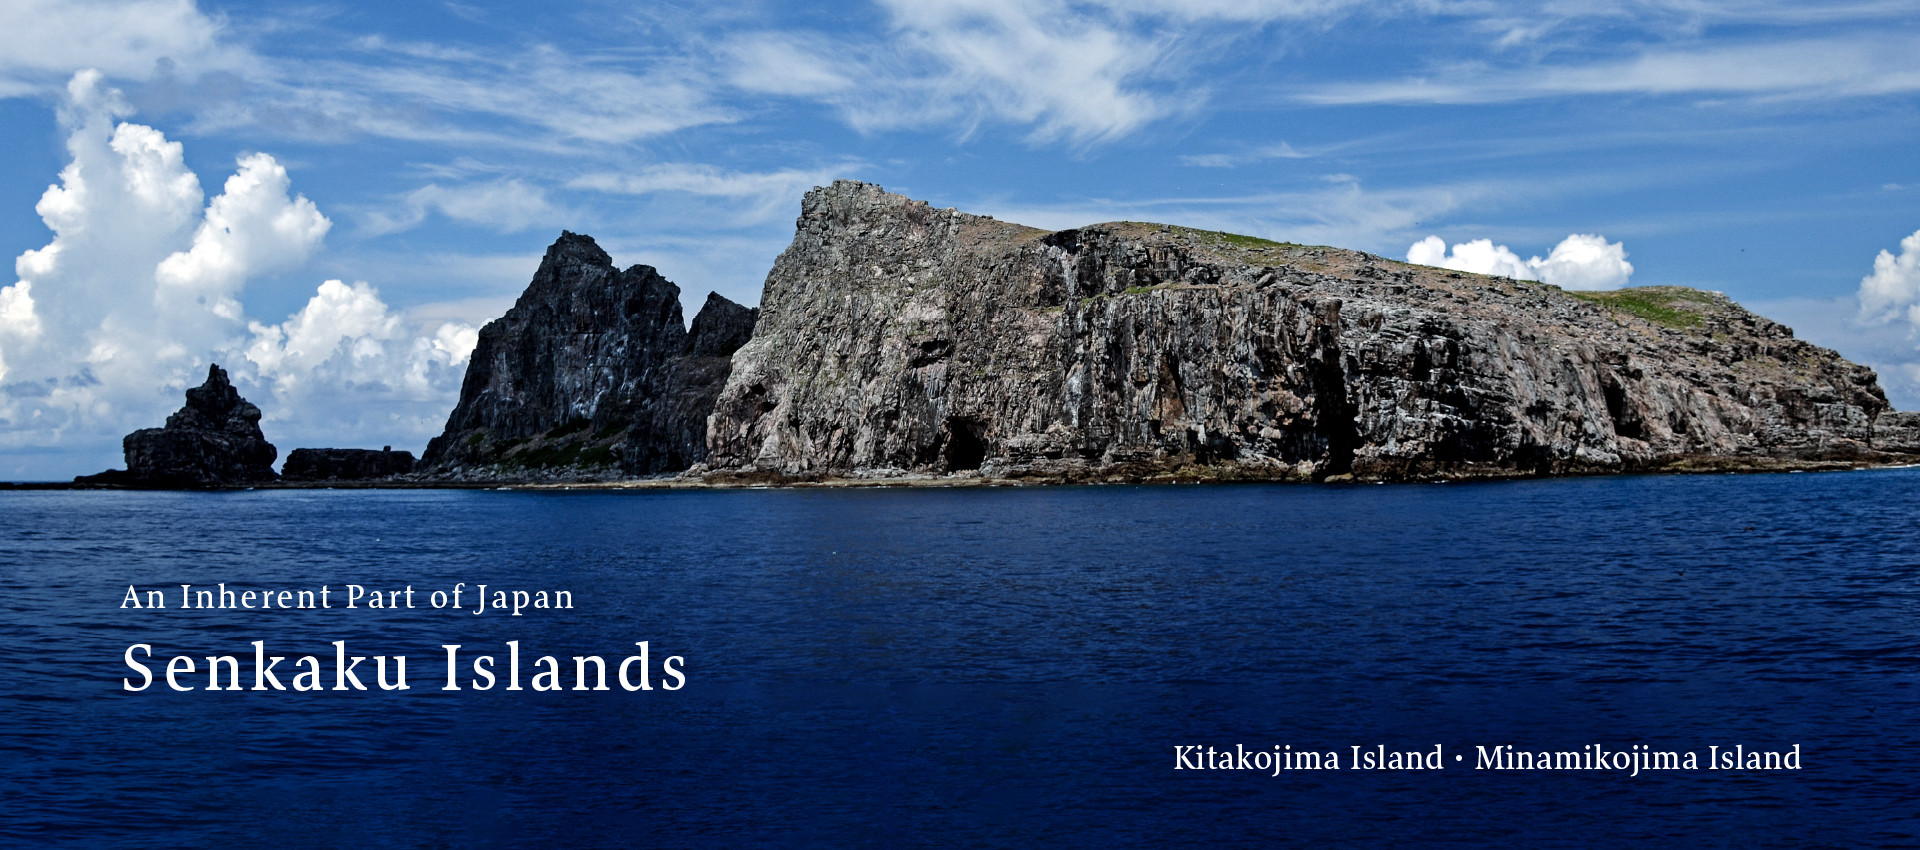 Kitakojima Island and Minamikojima Island